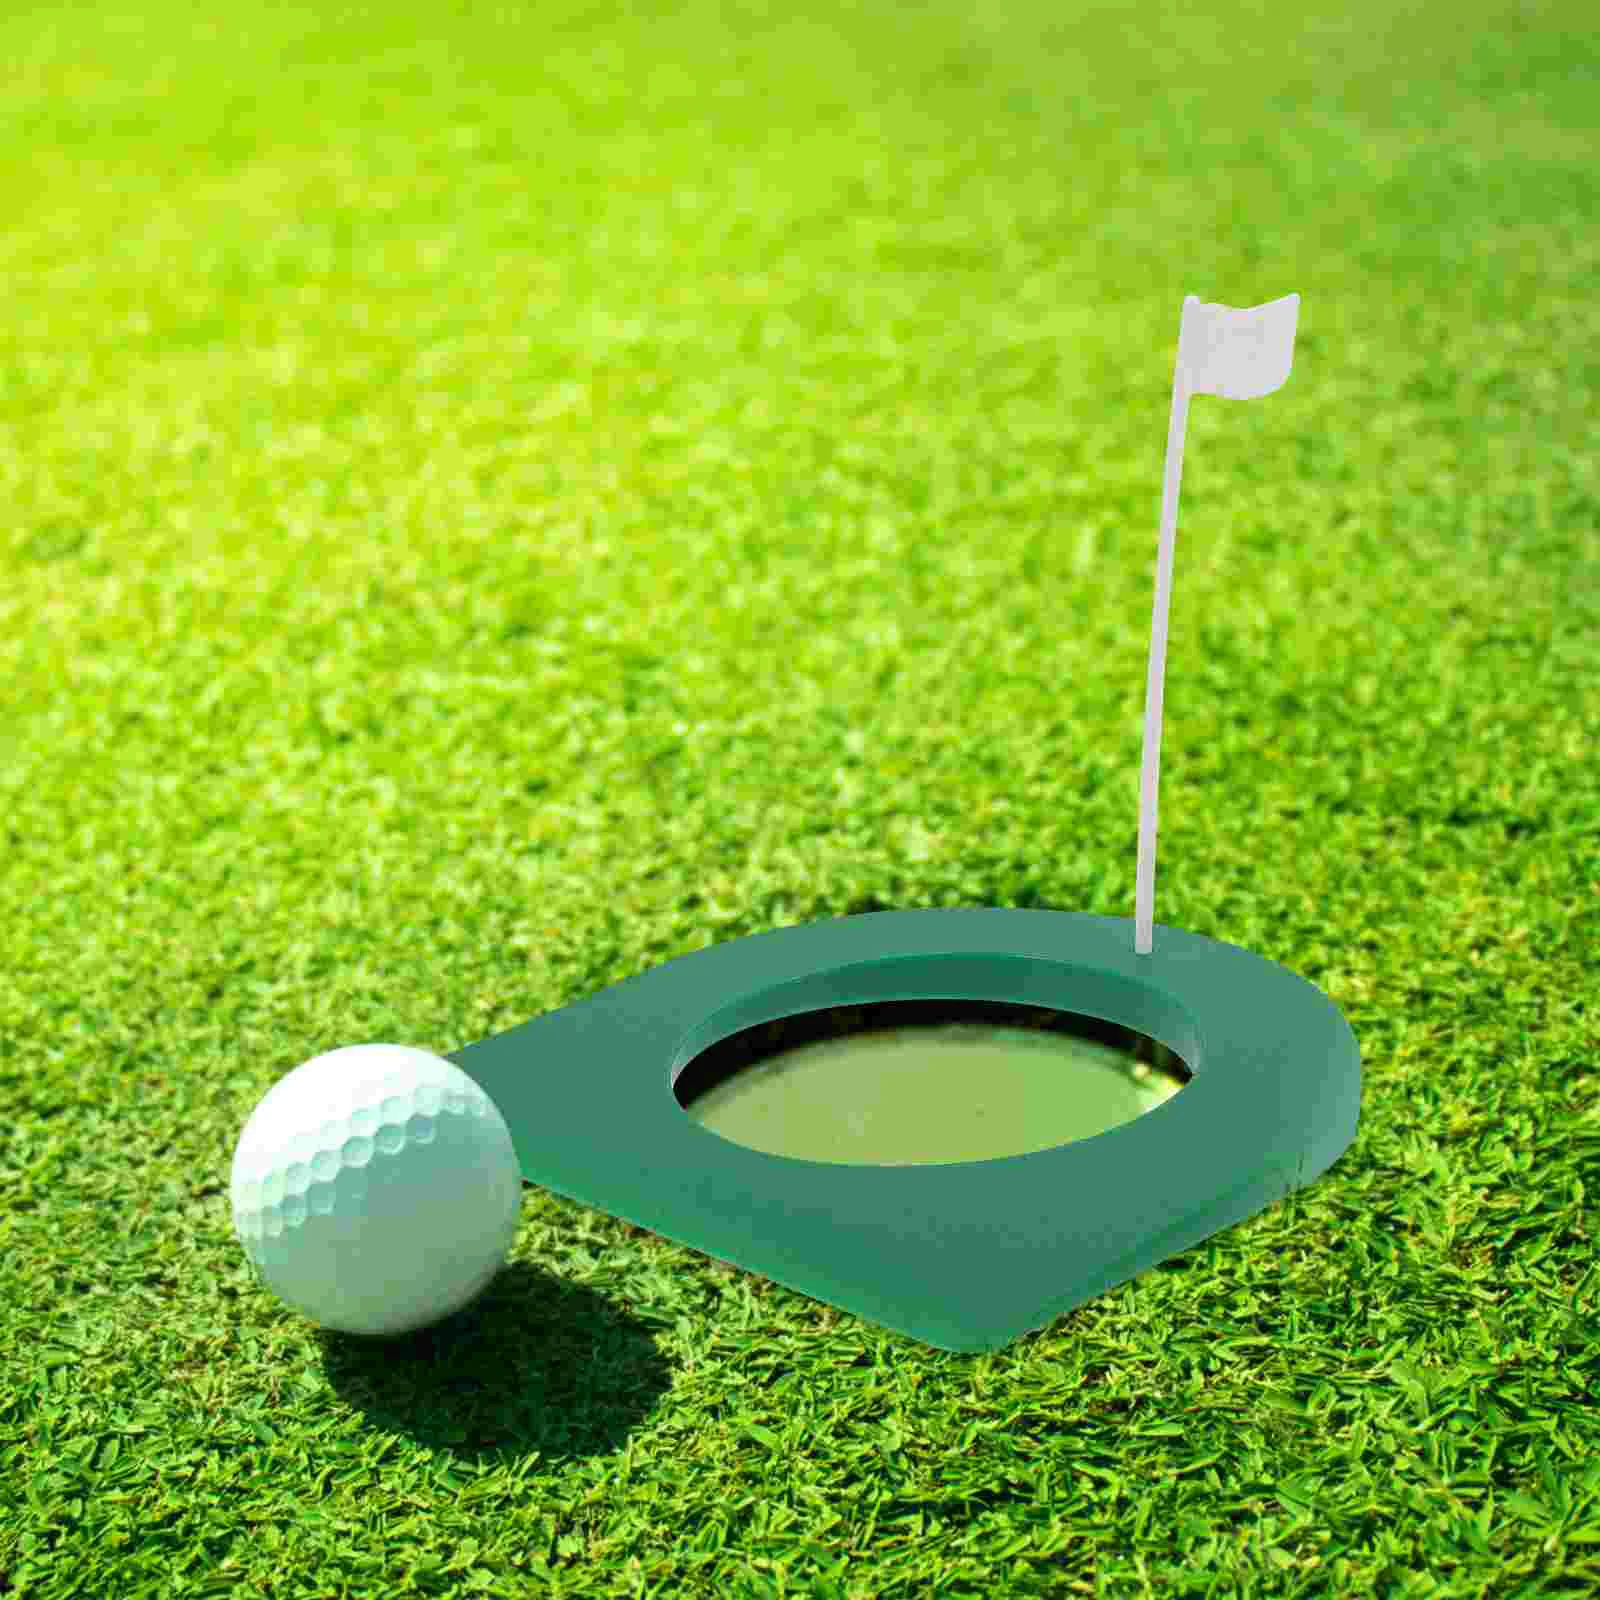 2 комплекта дисков для игры в гольф, мячи для гольфа, Тренировочное отверстие, Пластиковый стаканчик, Учебное пособие, Зеленые костюмы, Вспомогательный инструмент, детские уличные чашки - 3